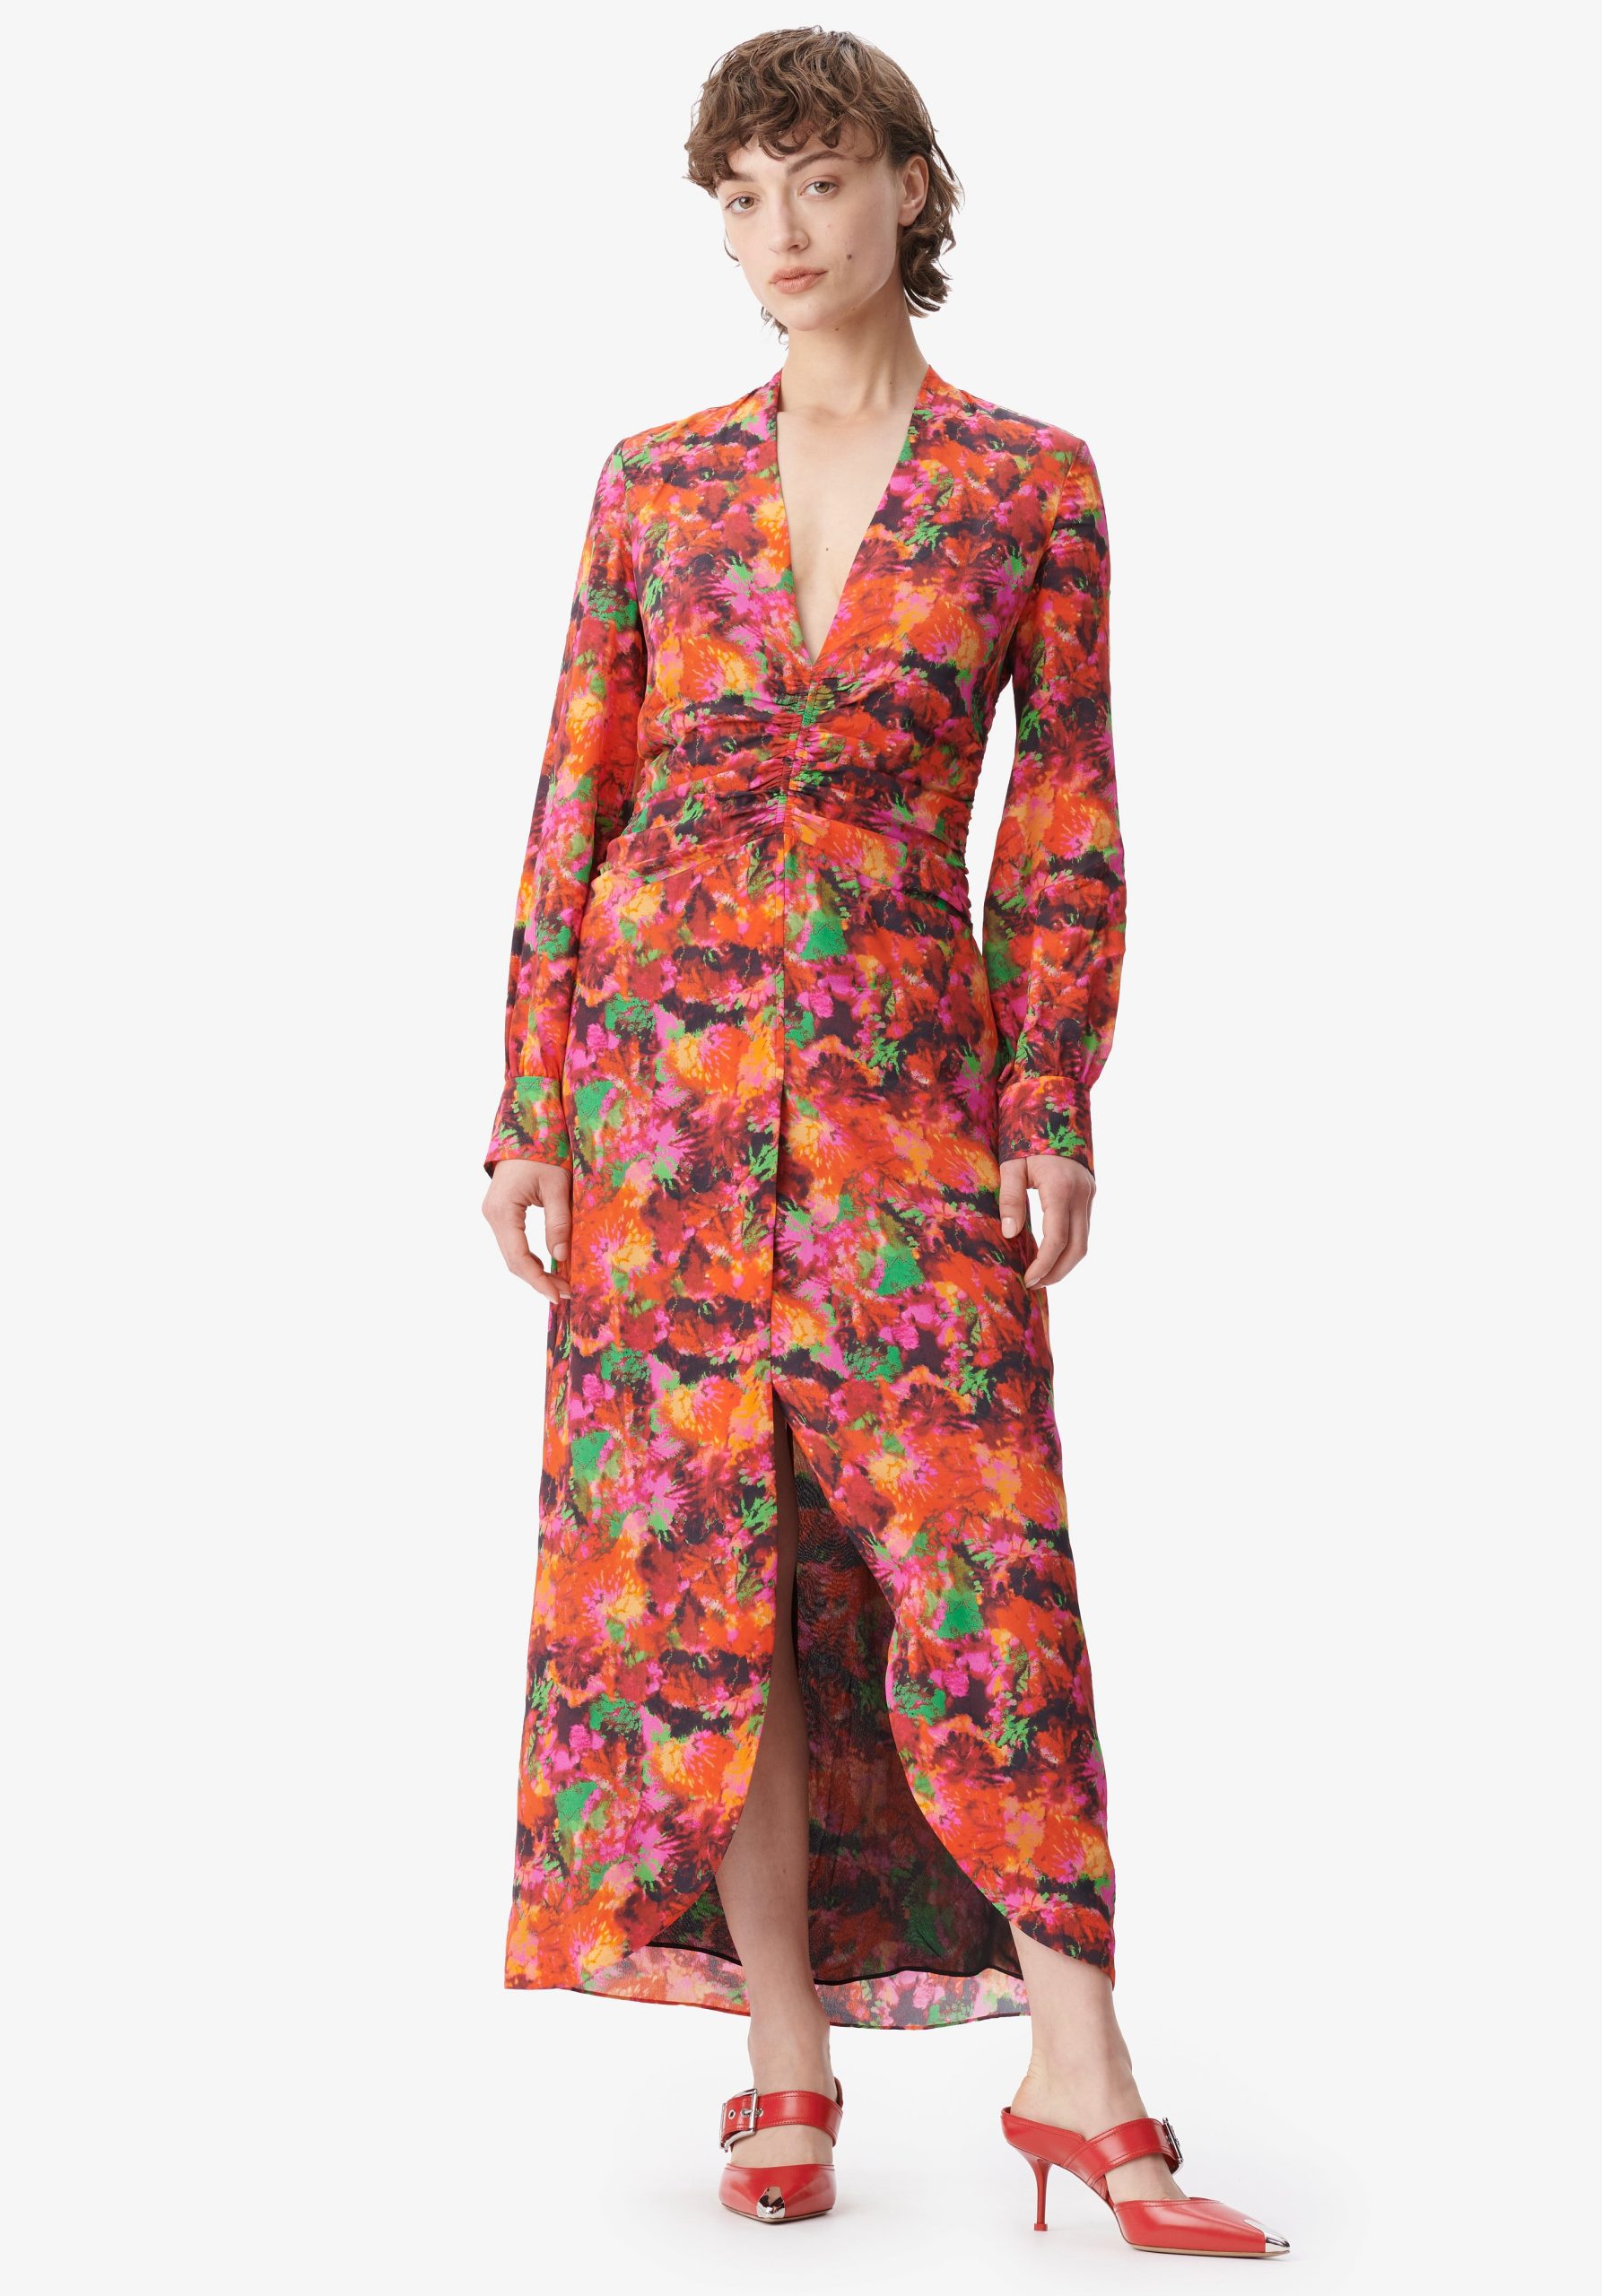 Kleider Lieferung Shibori Flower Damen Lala Berlin Dress Damala – 1